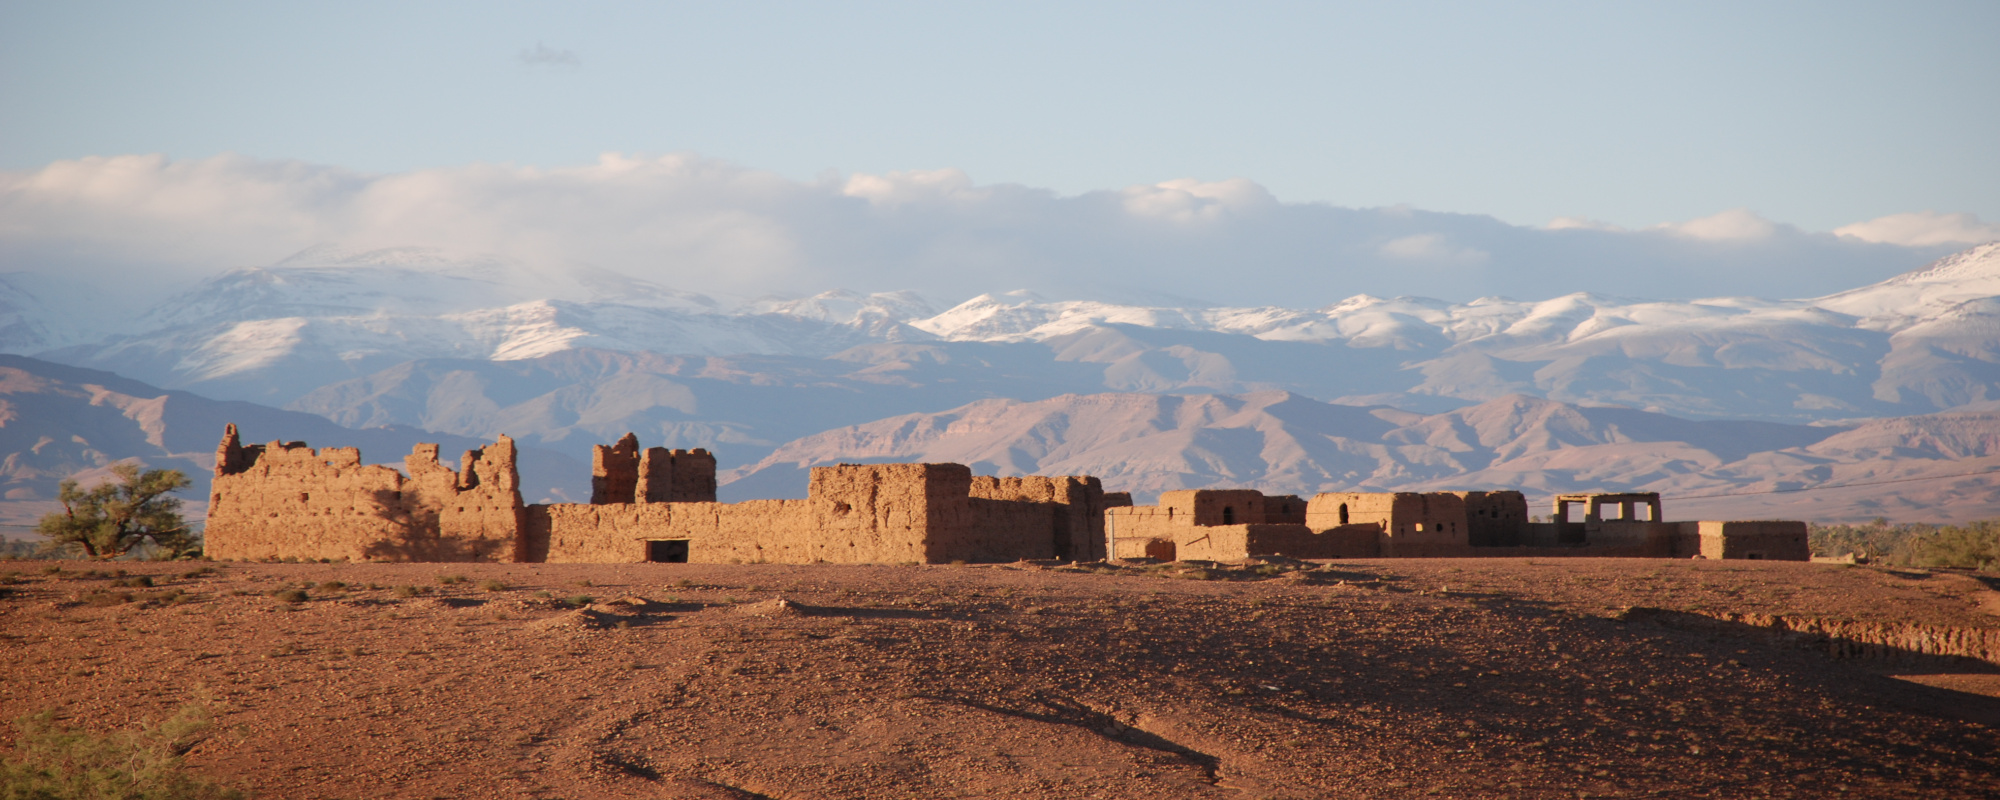 Marokko - Ruinen auf Hügel entlang der Straße der Kasbahs mit Gebirgen im Hintergrund